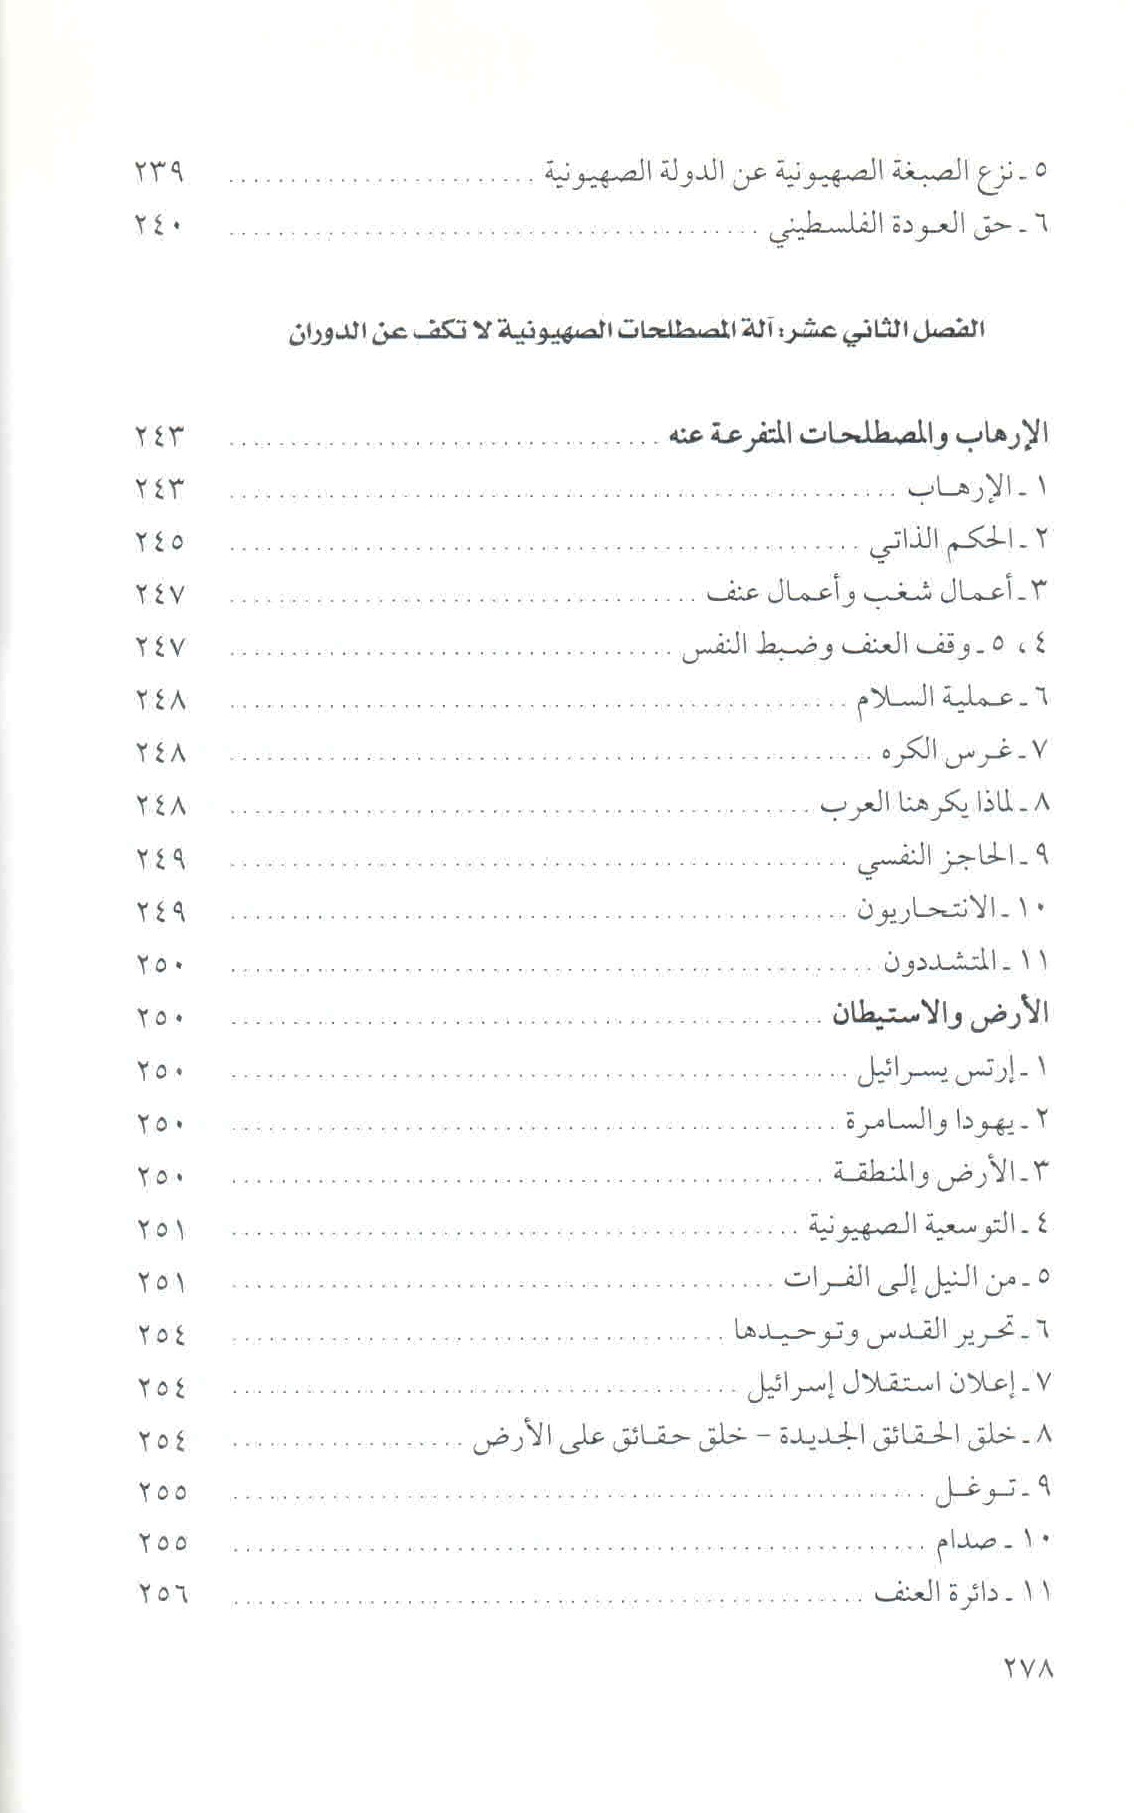 قائمة محتويات كتاب في الخطاب والمصطلح الصهيوني ص. 278.